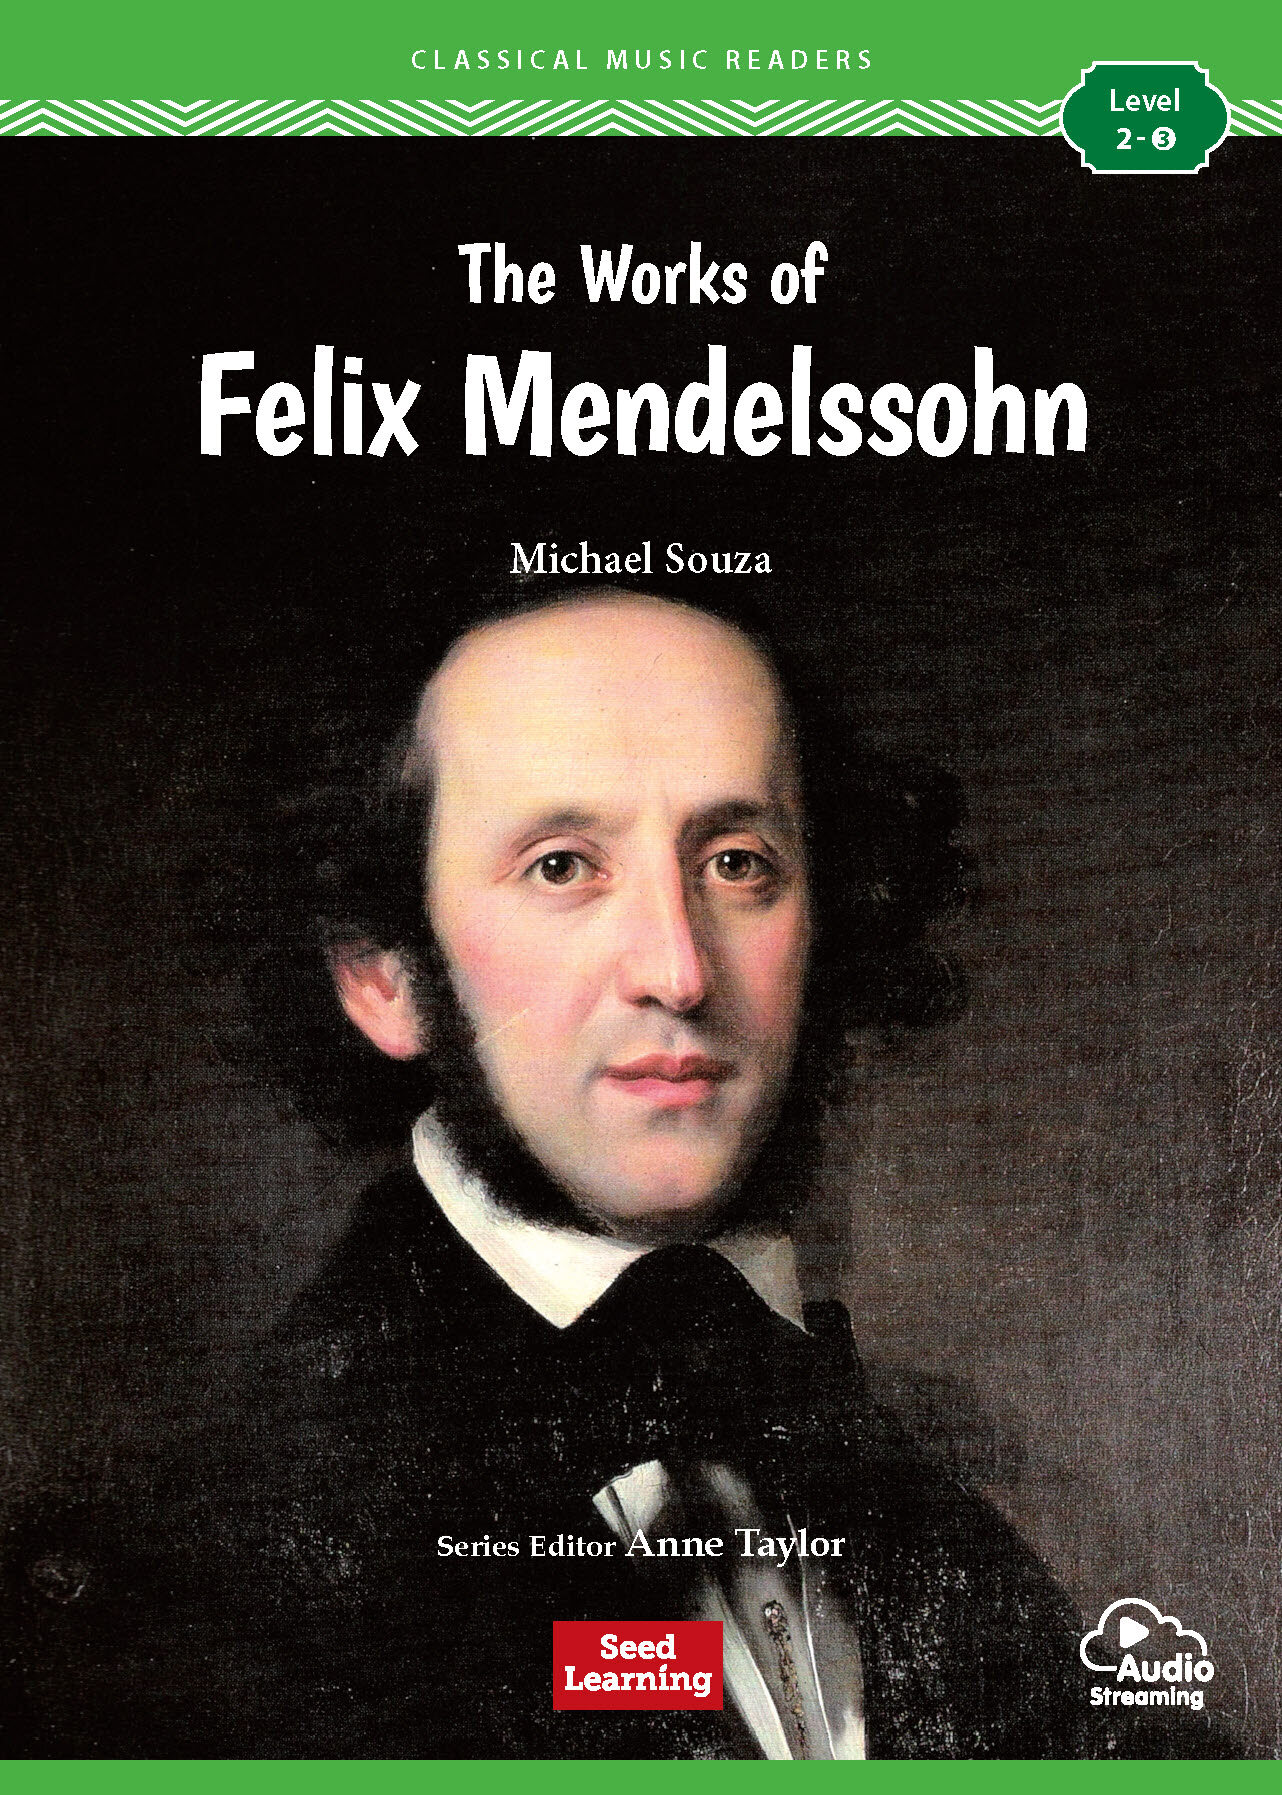 The Works of Felix Mendelssohn